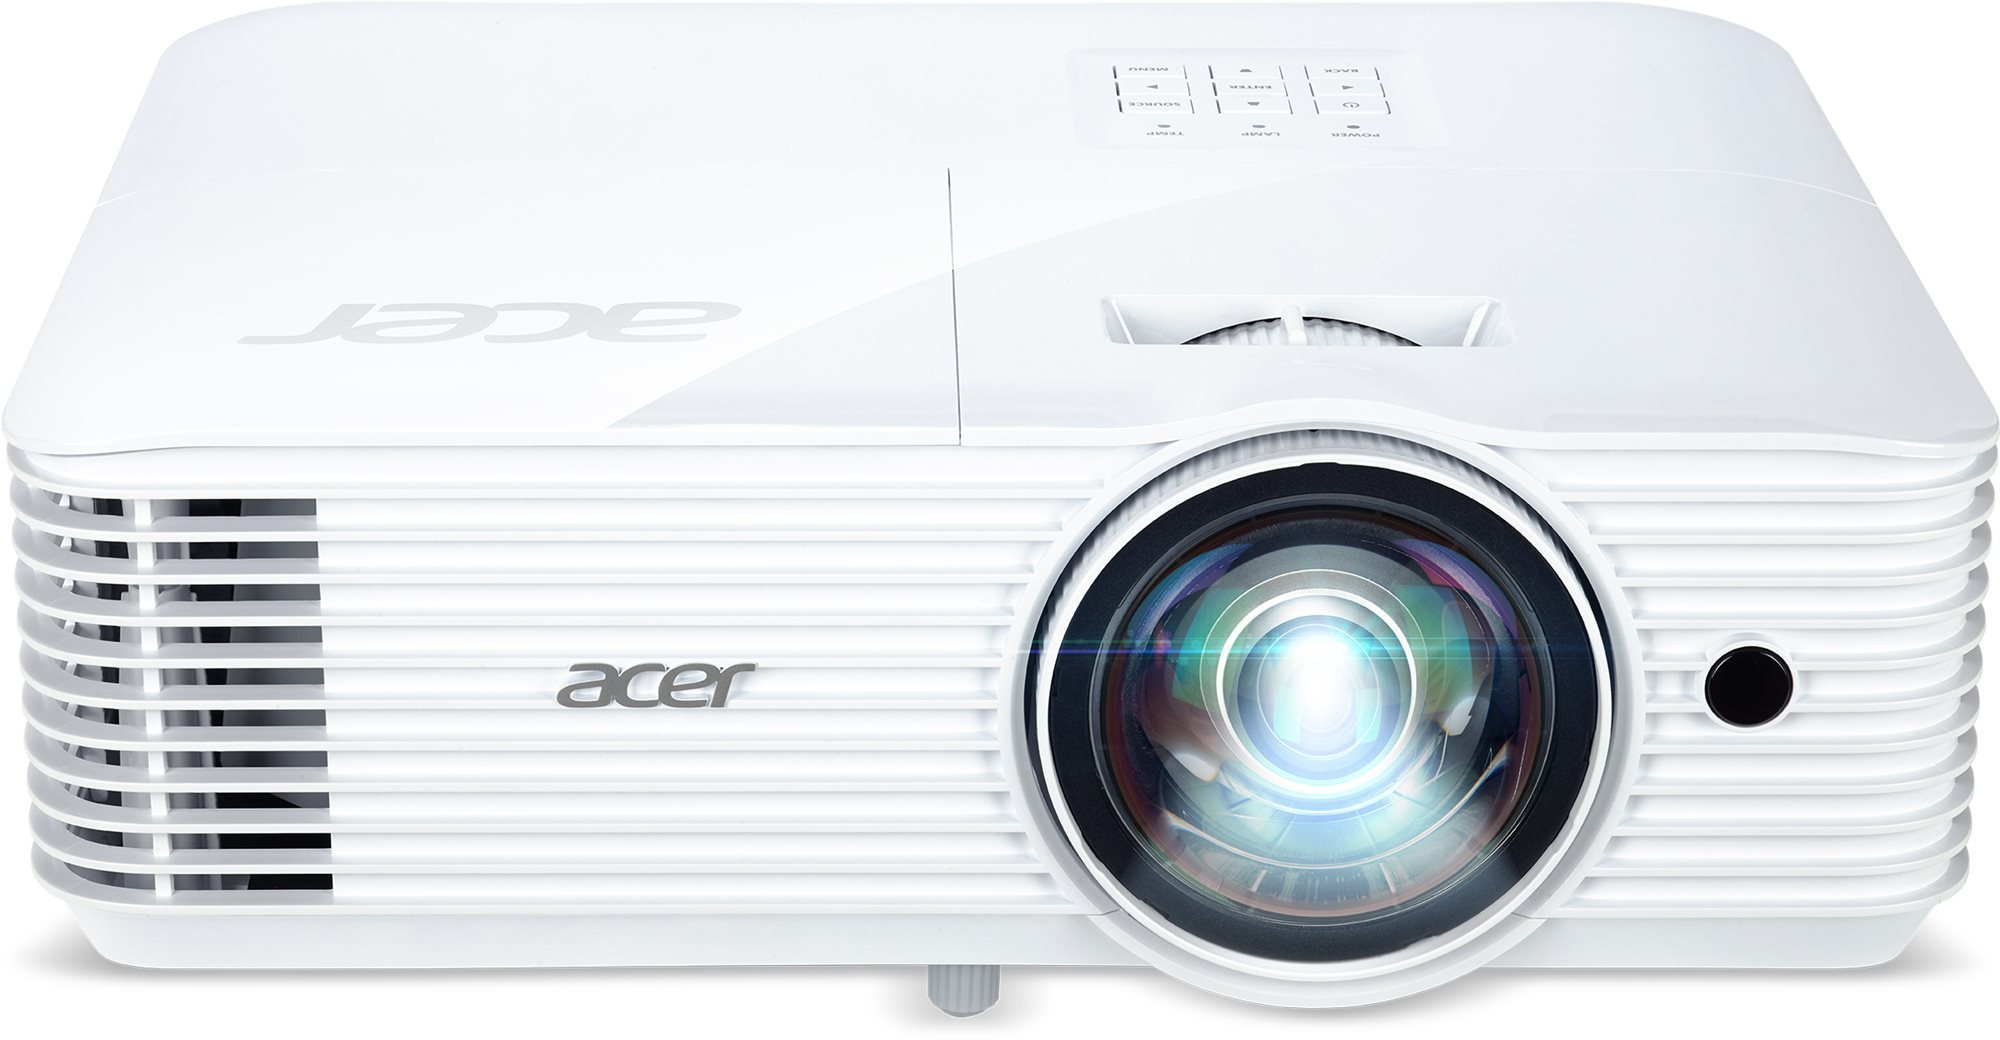 ACER projektor S1286Hn, DLP 3D, XGA, 3500lm, 20000/1, HMDI, rj45, rövid vetítés 0,6, 3,1 kg, EURO EMEA